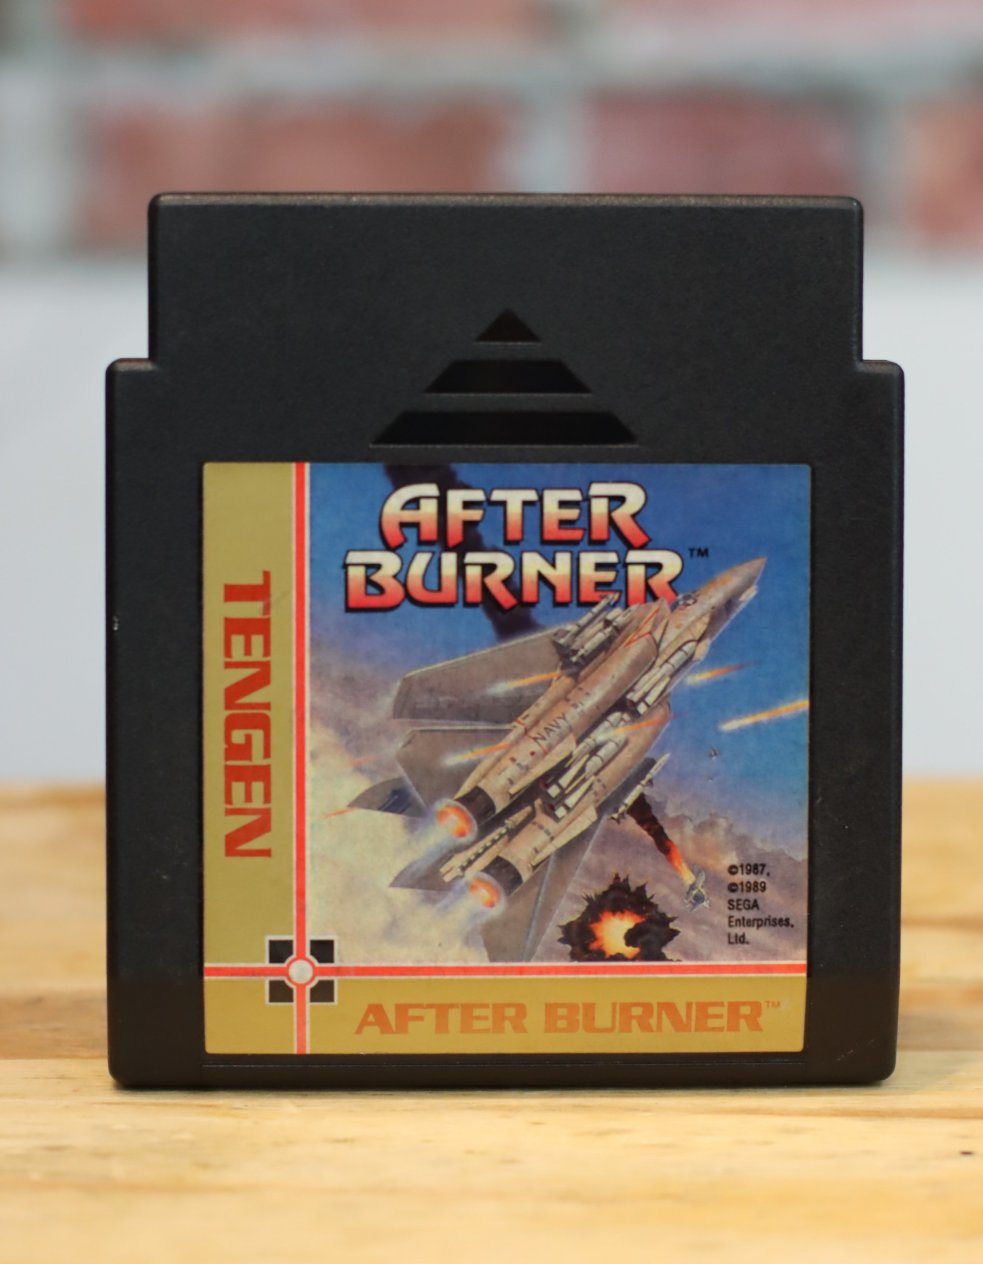 After Burner Tengen Original NES Nintendo Video Game Tested